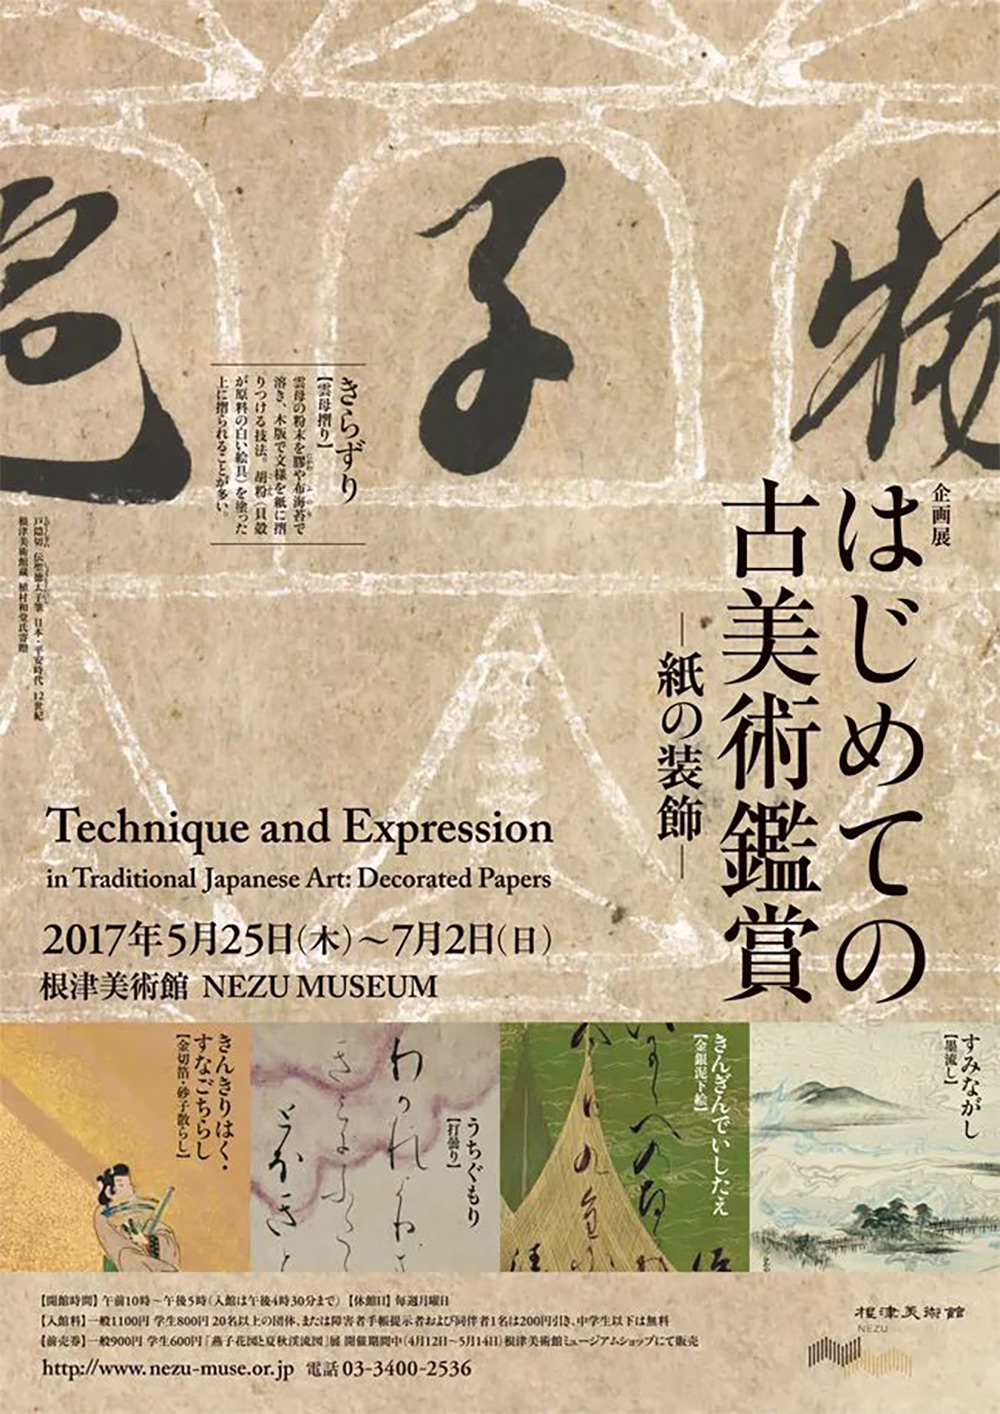 12款极具韵味的日本展览海报设计